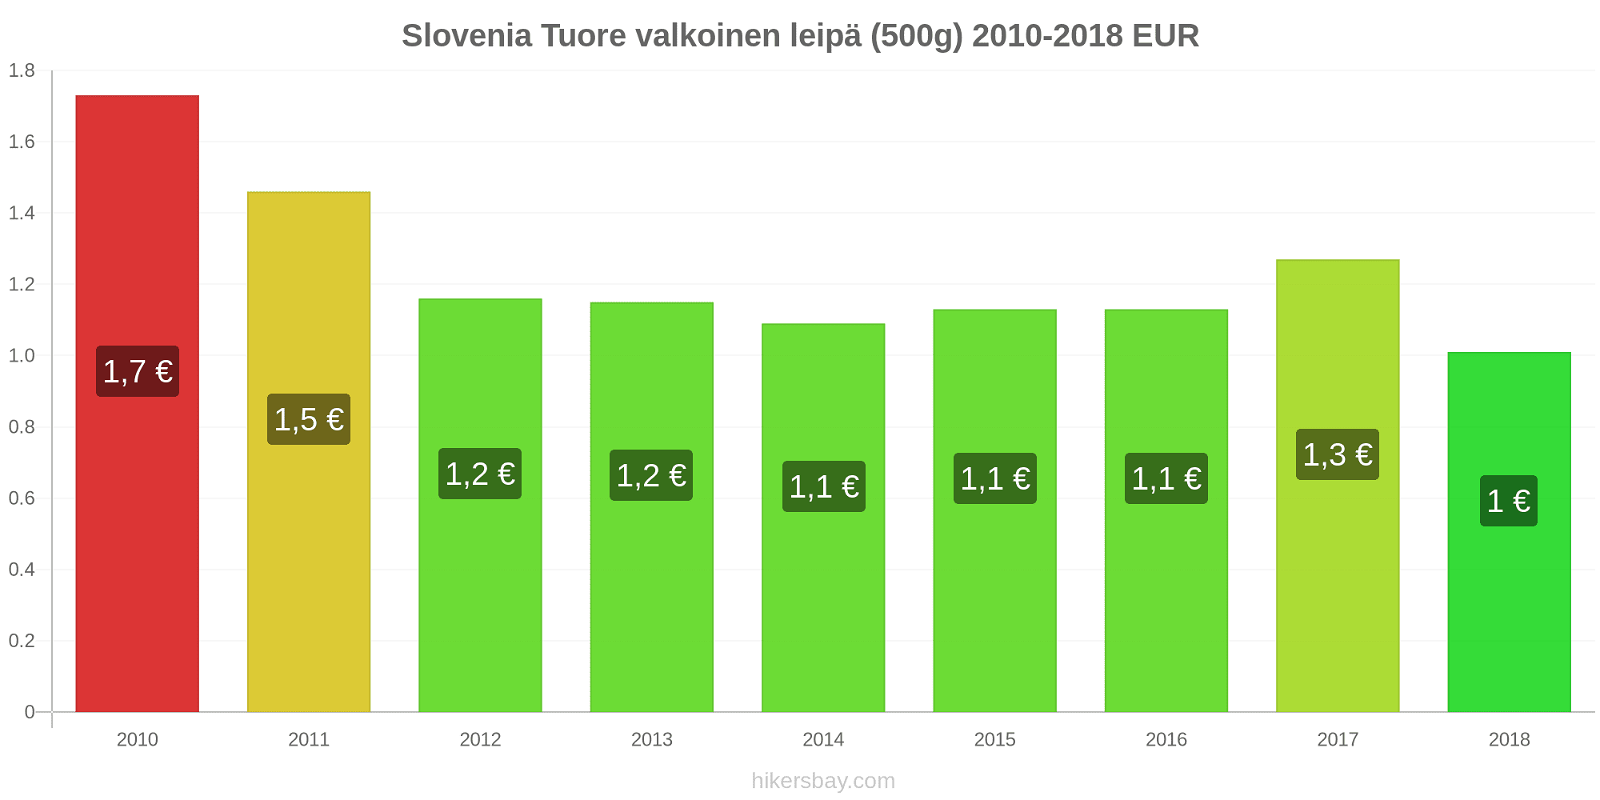 Slovenia hintojen muutokset Tuore valkoinen leipä (500g) hikersbay.com